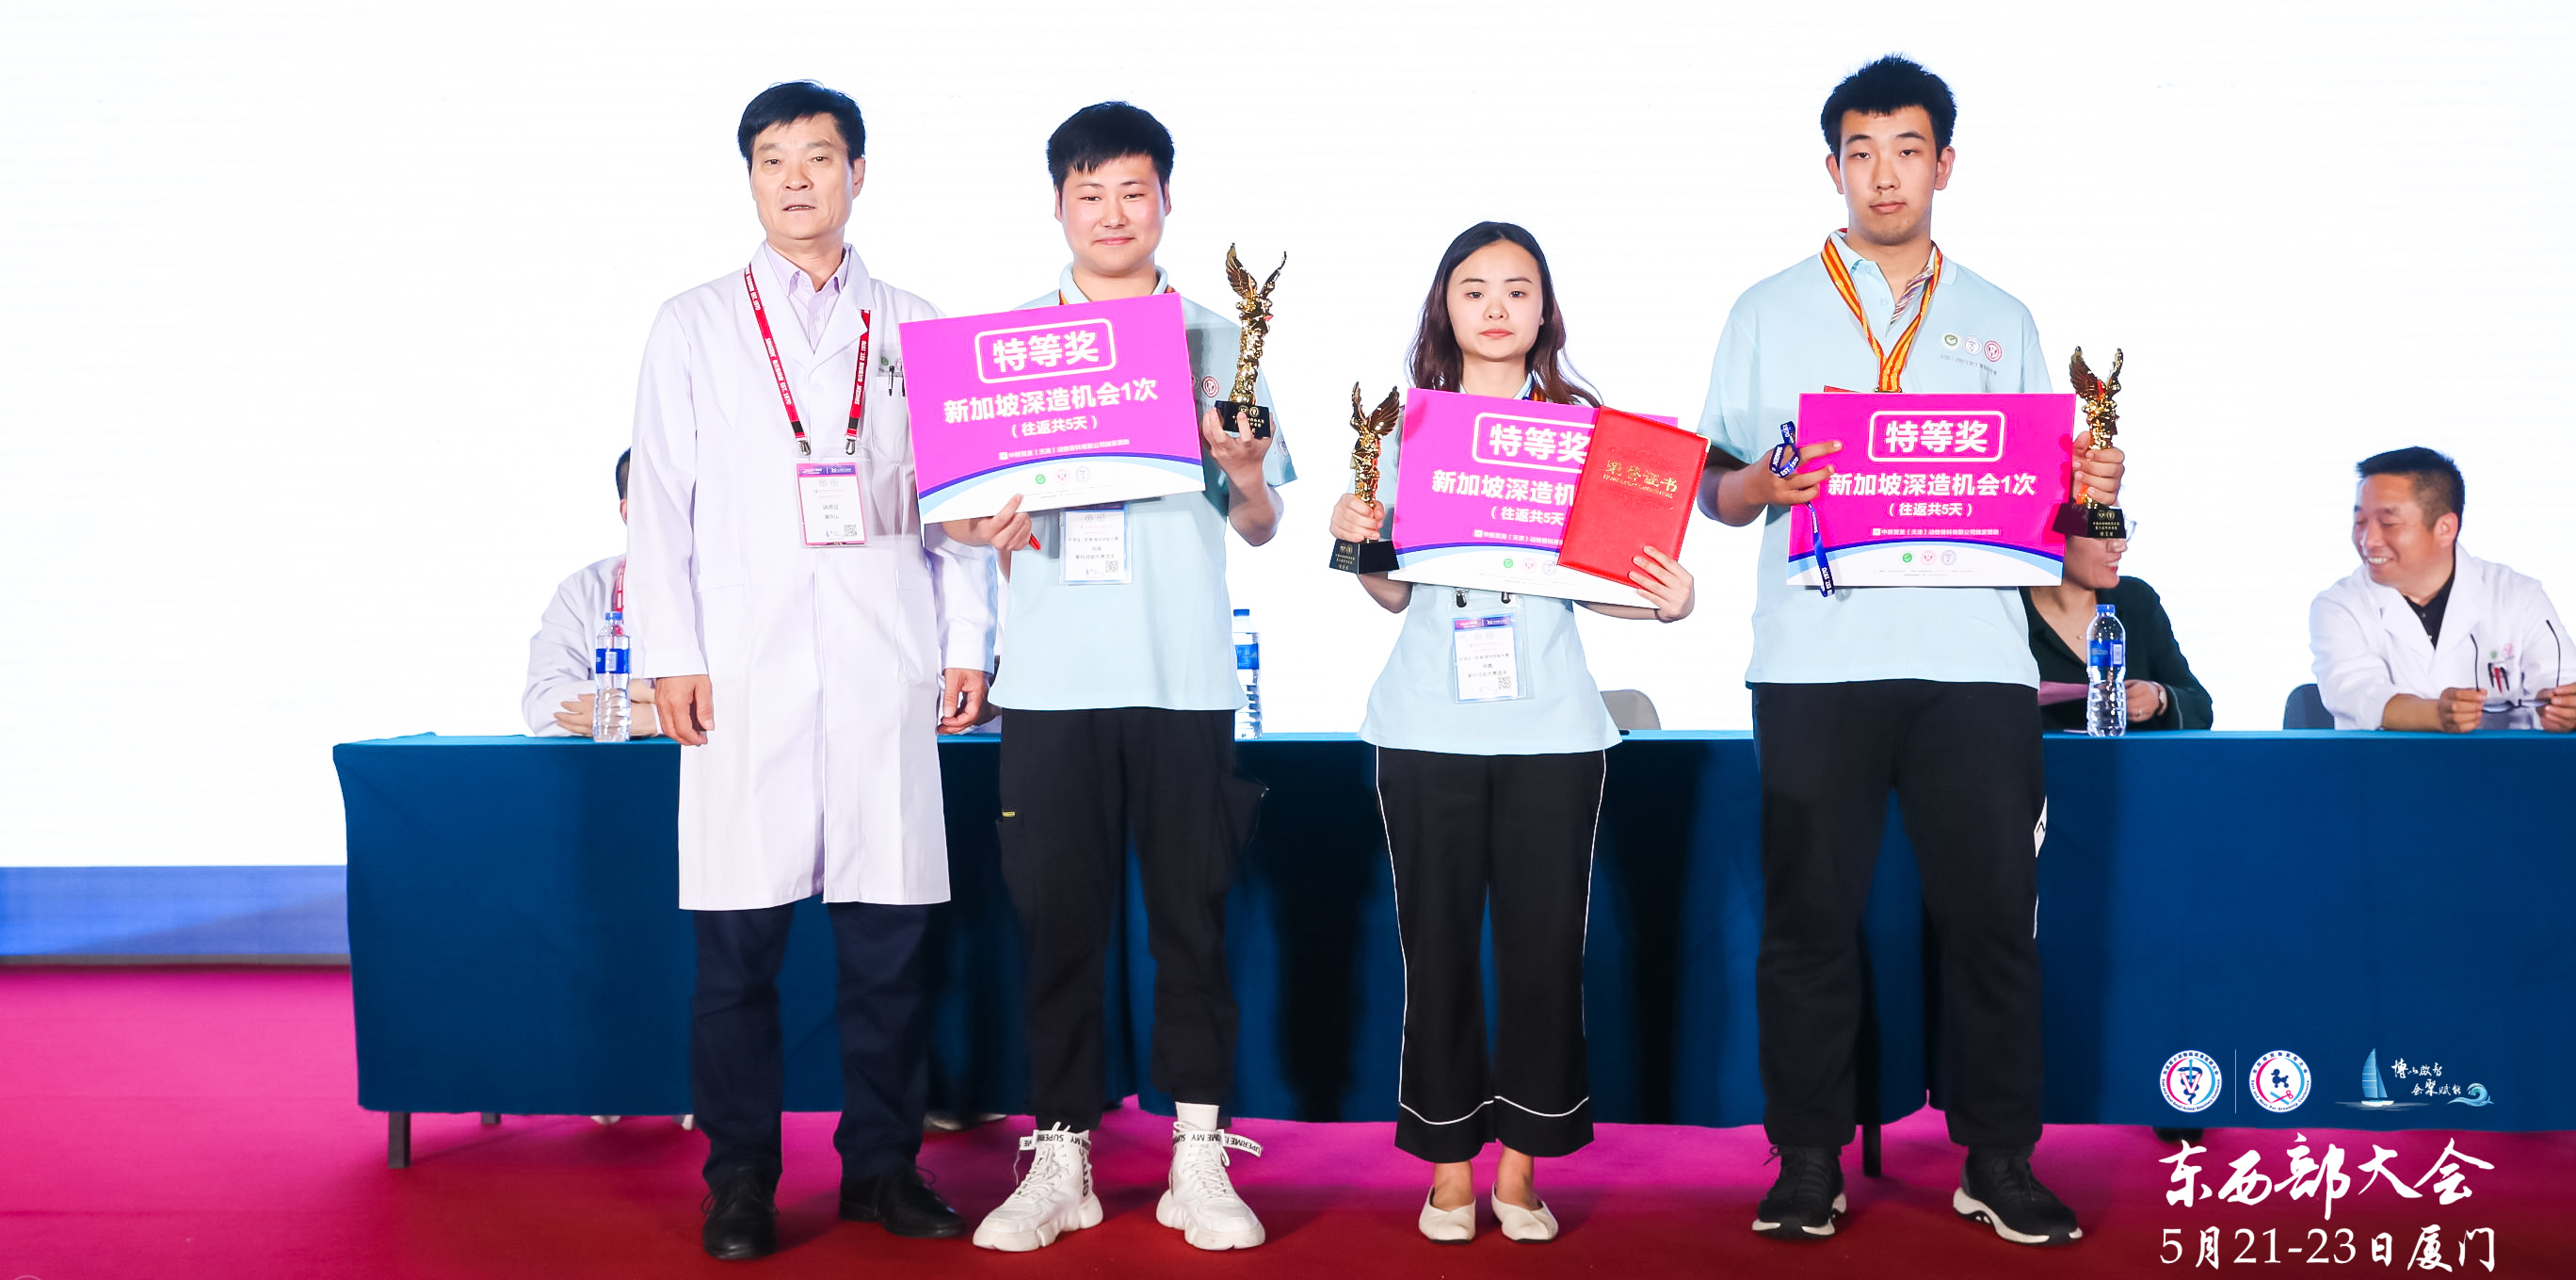 祝贺动物科技学院学子获2019年中国小动物技能大赛第三届骨科专赛特等奖